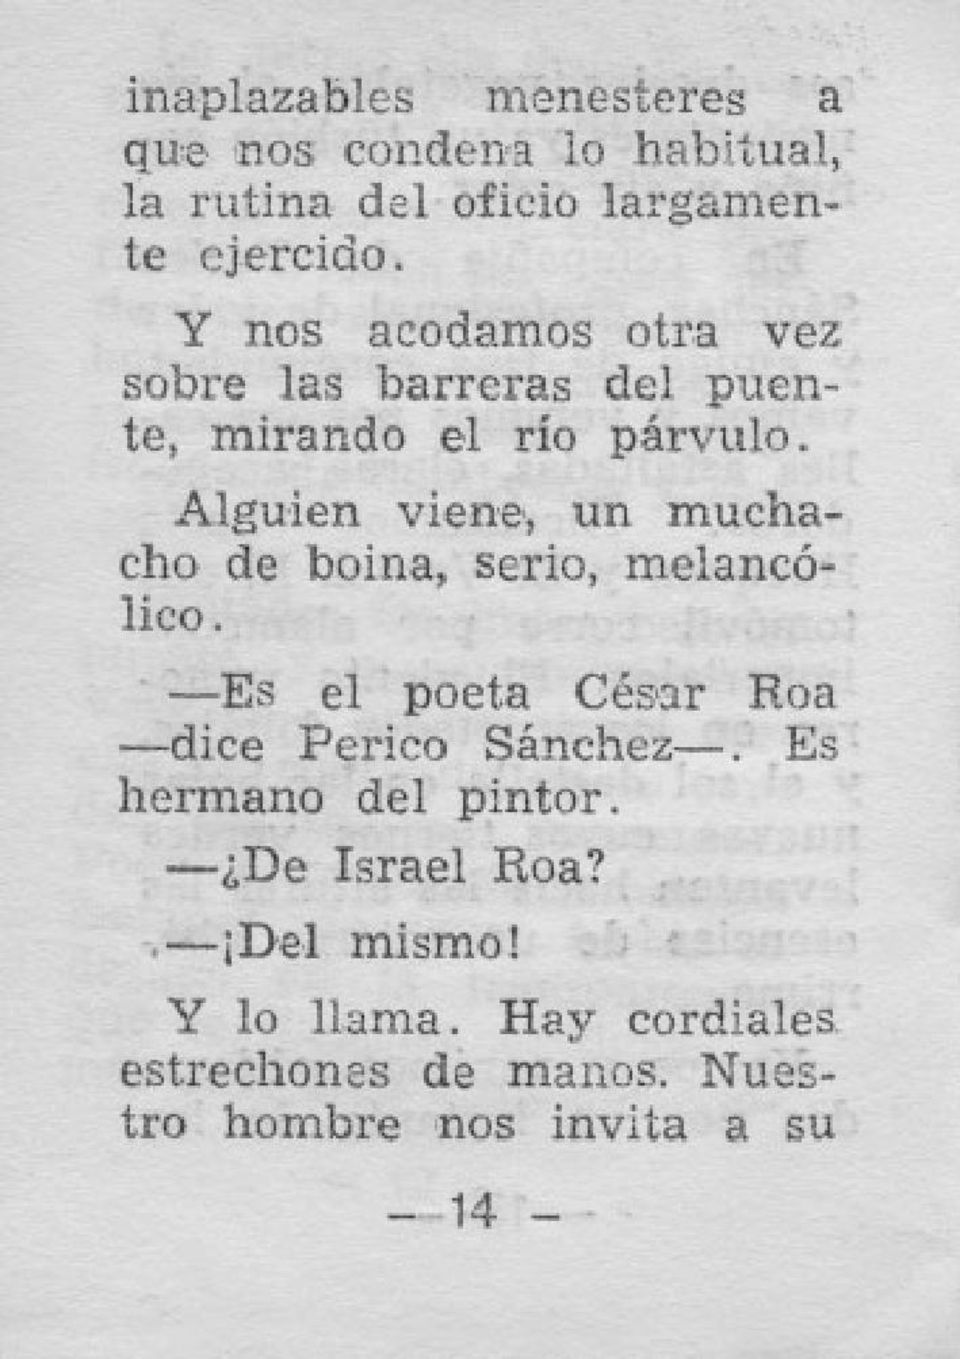 Alguien viene, un muchacho de boina, serio, melanc6- Iieo. --Es el poeta CEsur Roa -dice Perico SAncbez-.